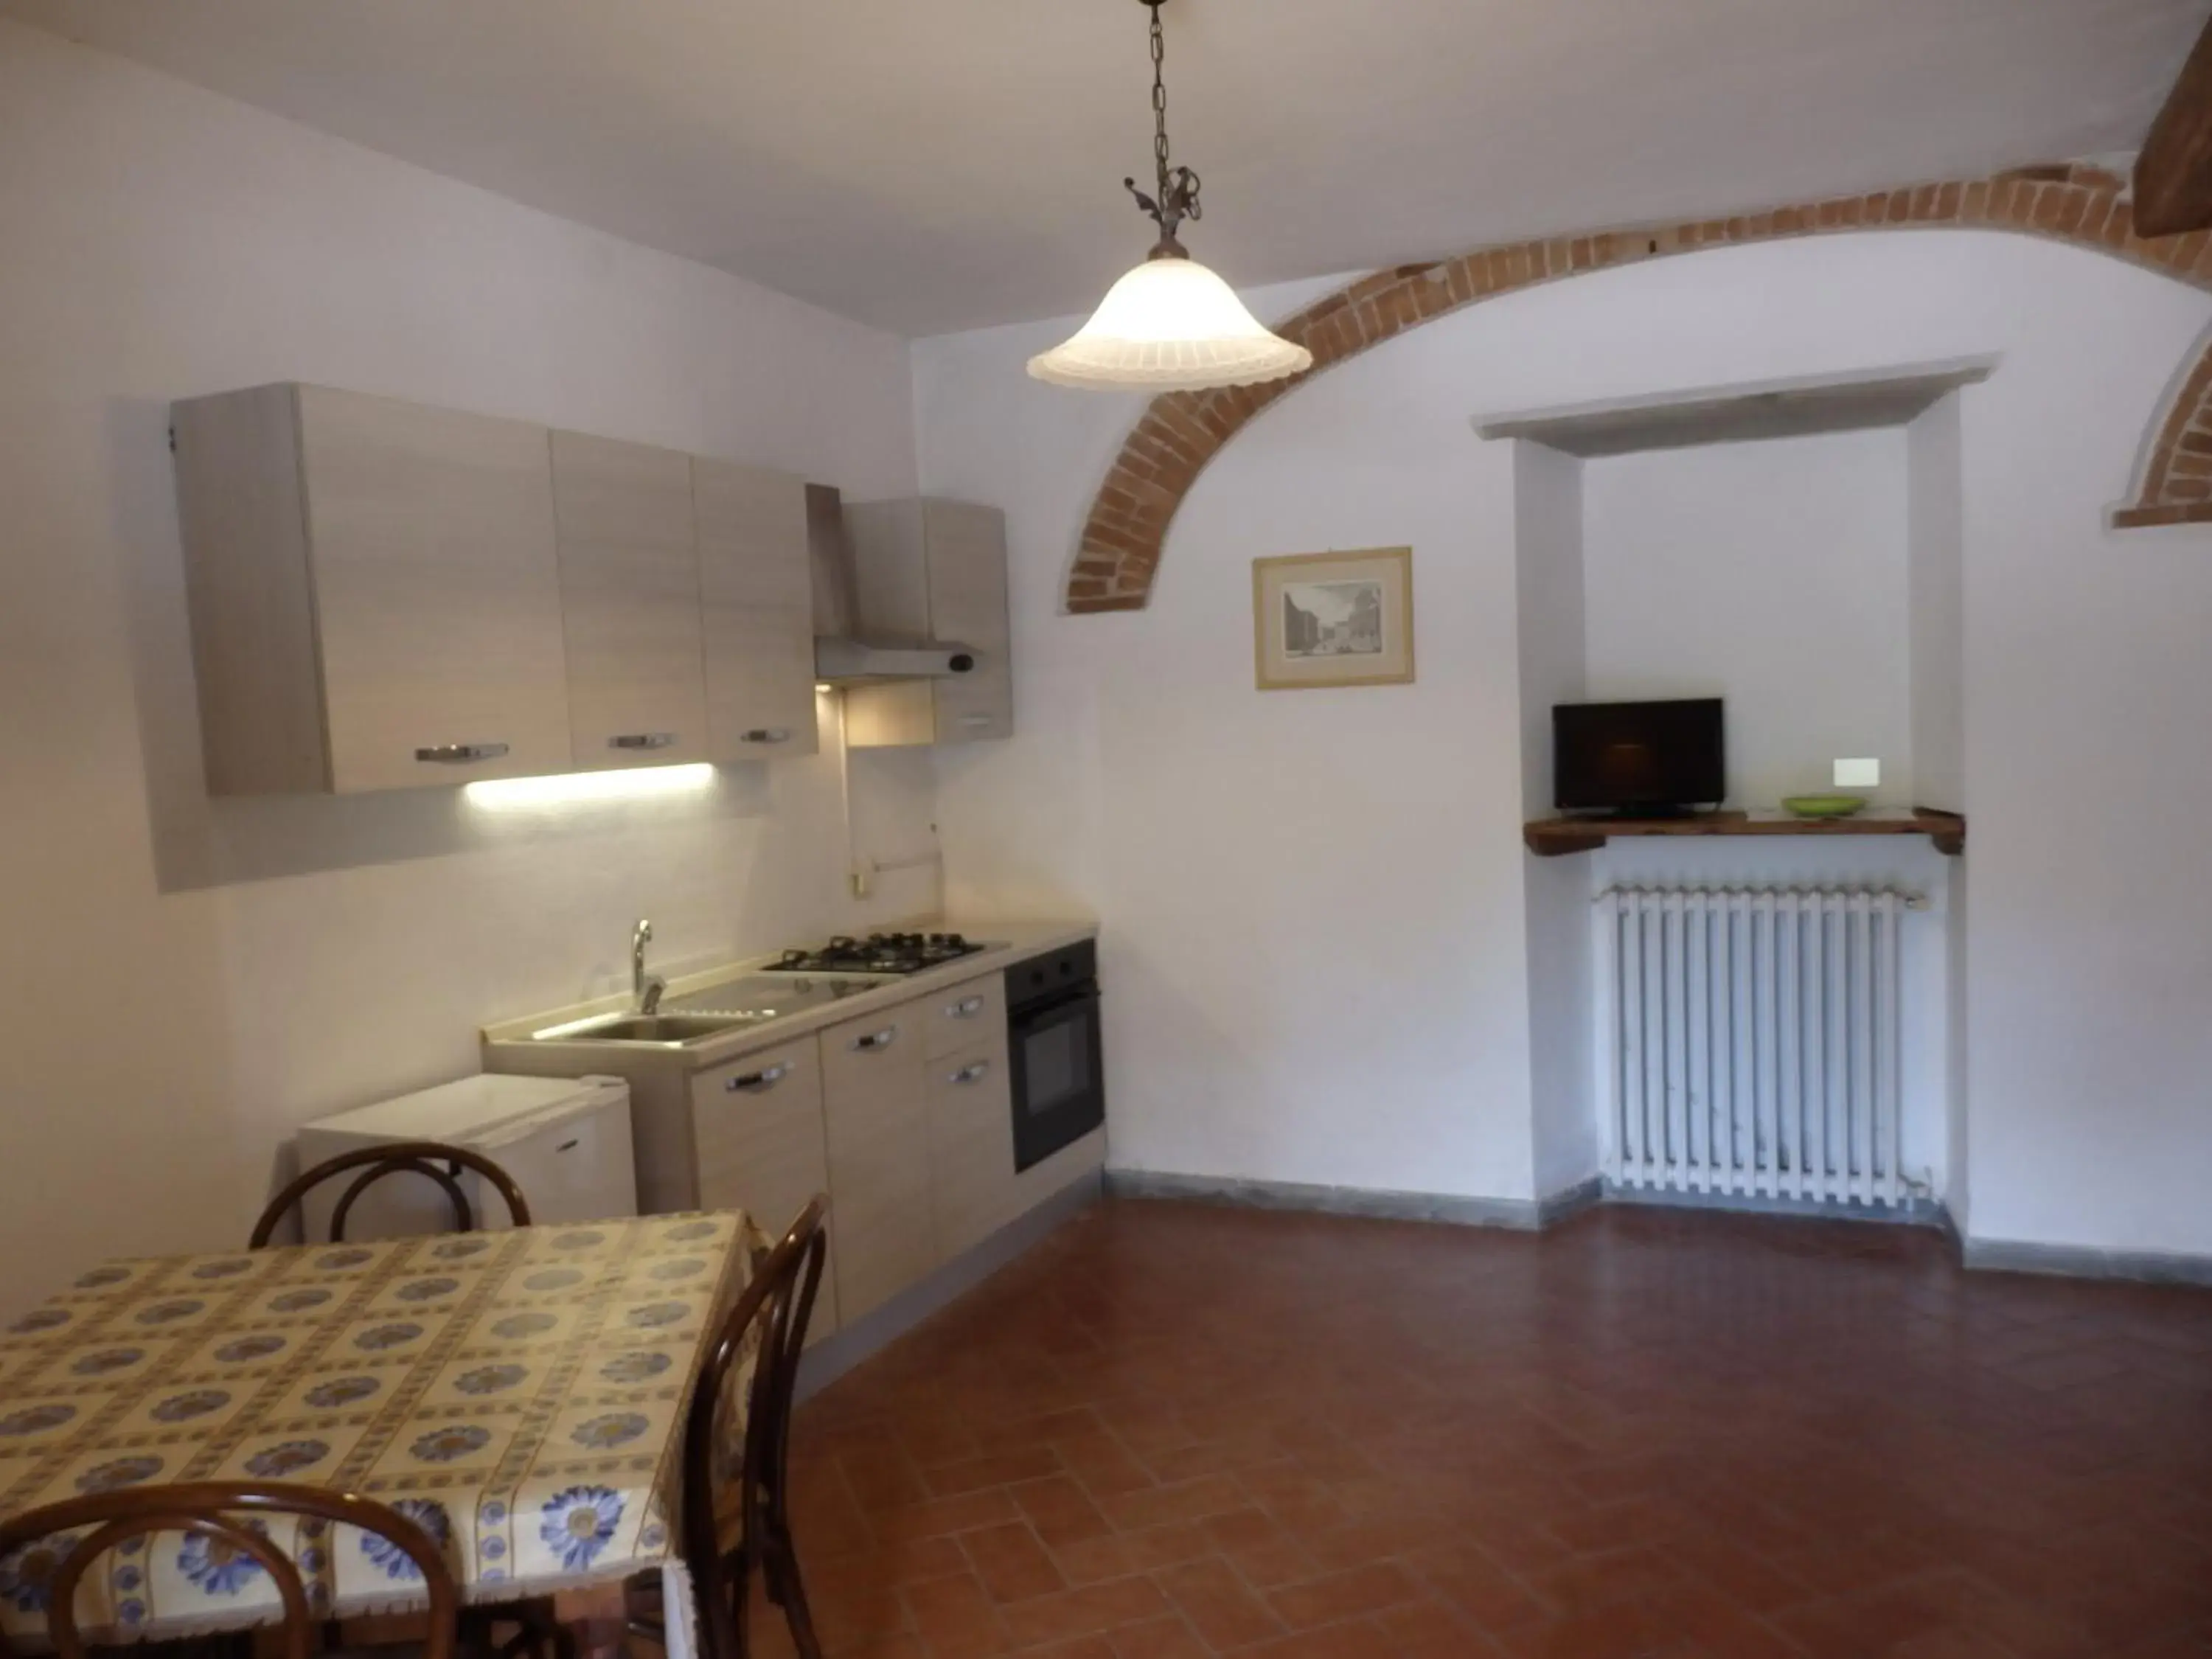 Kitchen or kitchenette, Kitchen/Kitchenette in Residence Casprini da Omero